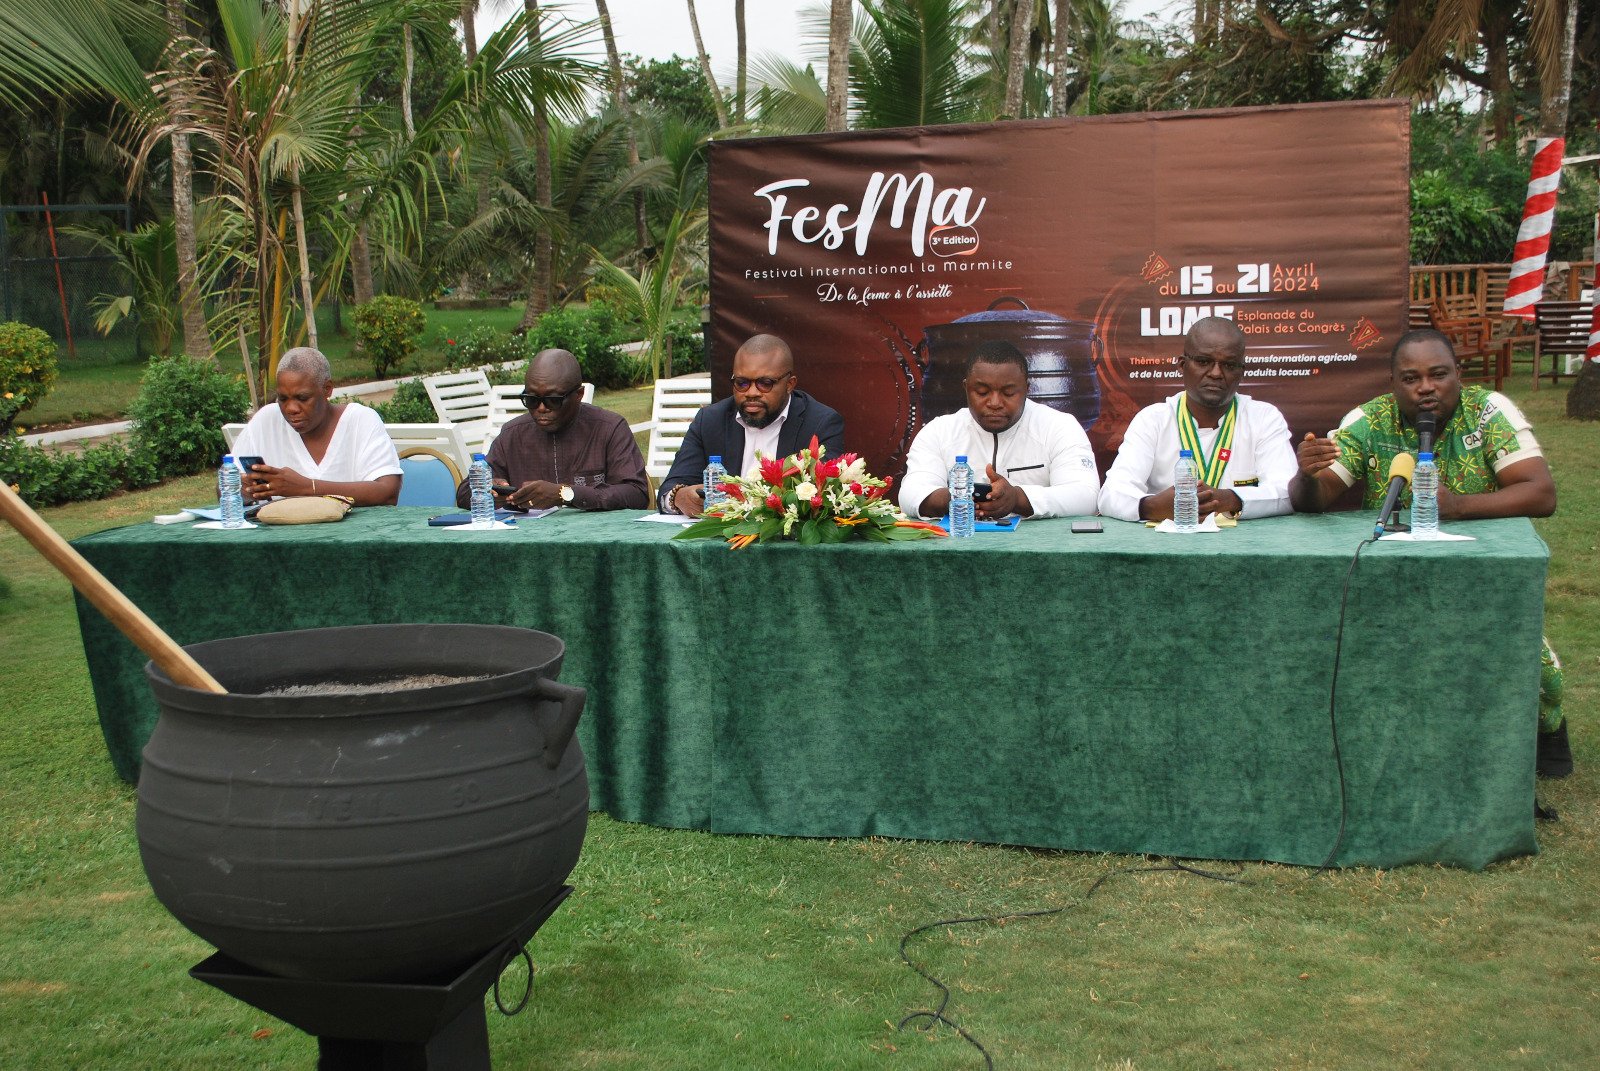 le Festival international de la marmite (FESMA) revient pour sa troisième édition du 15 au 21 avril 2024 à Lomé.